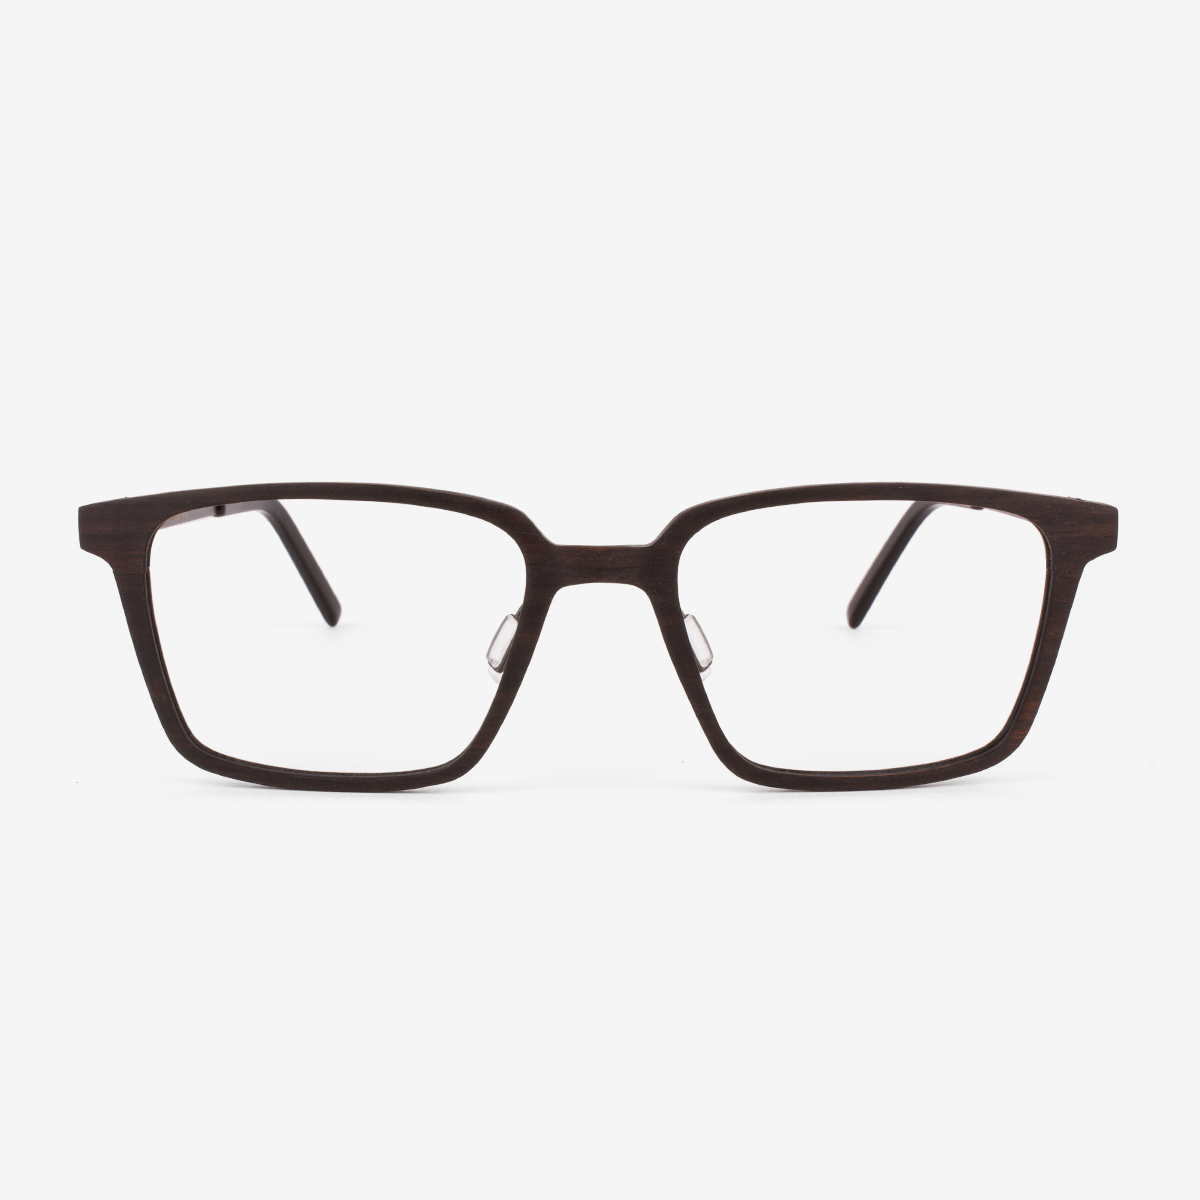 Melbourne - Metal & Wood Eyeglasses